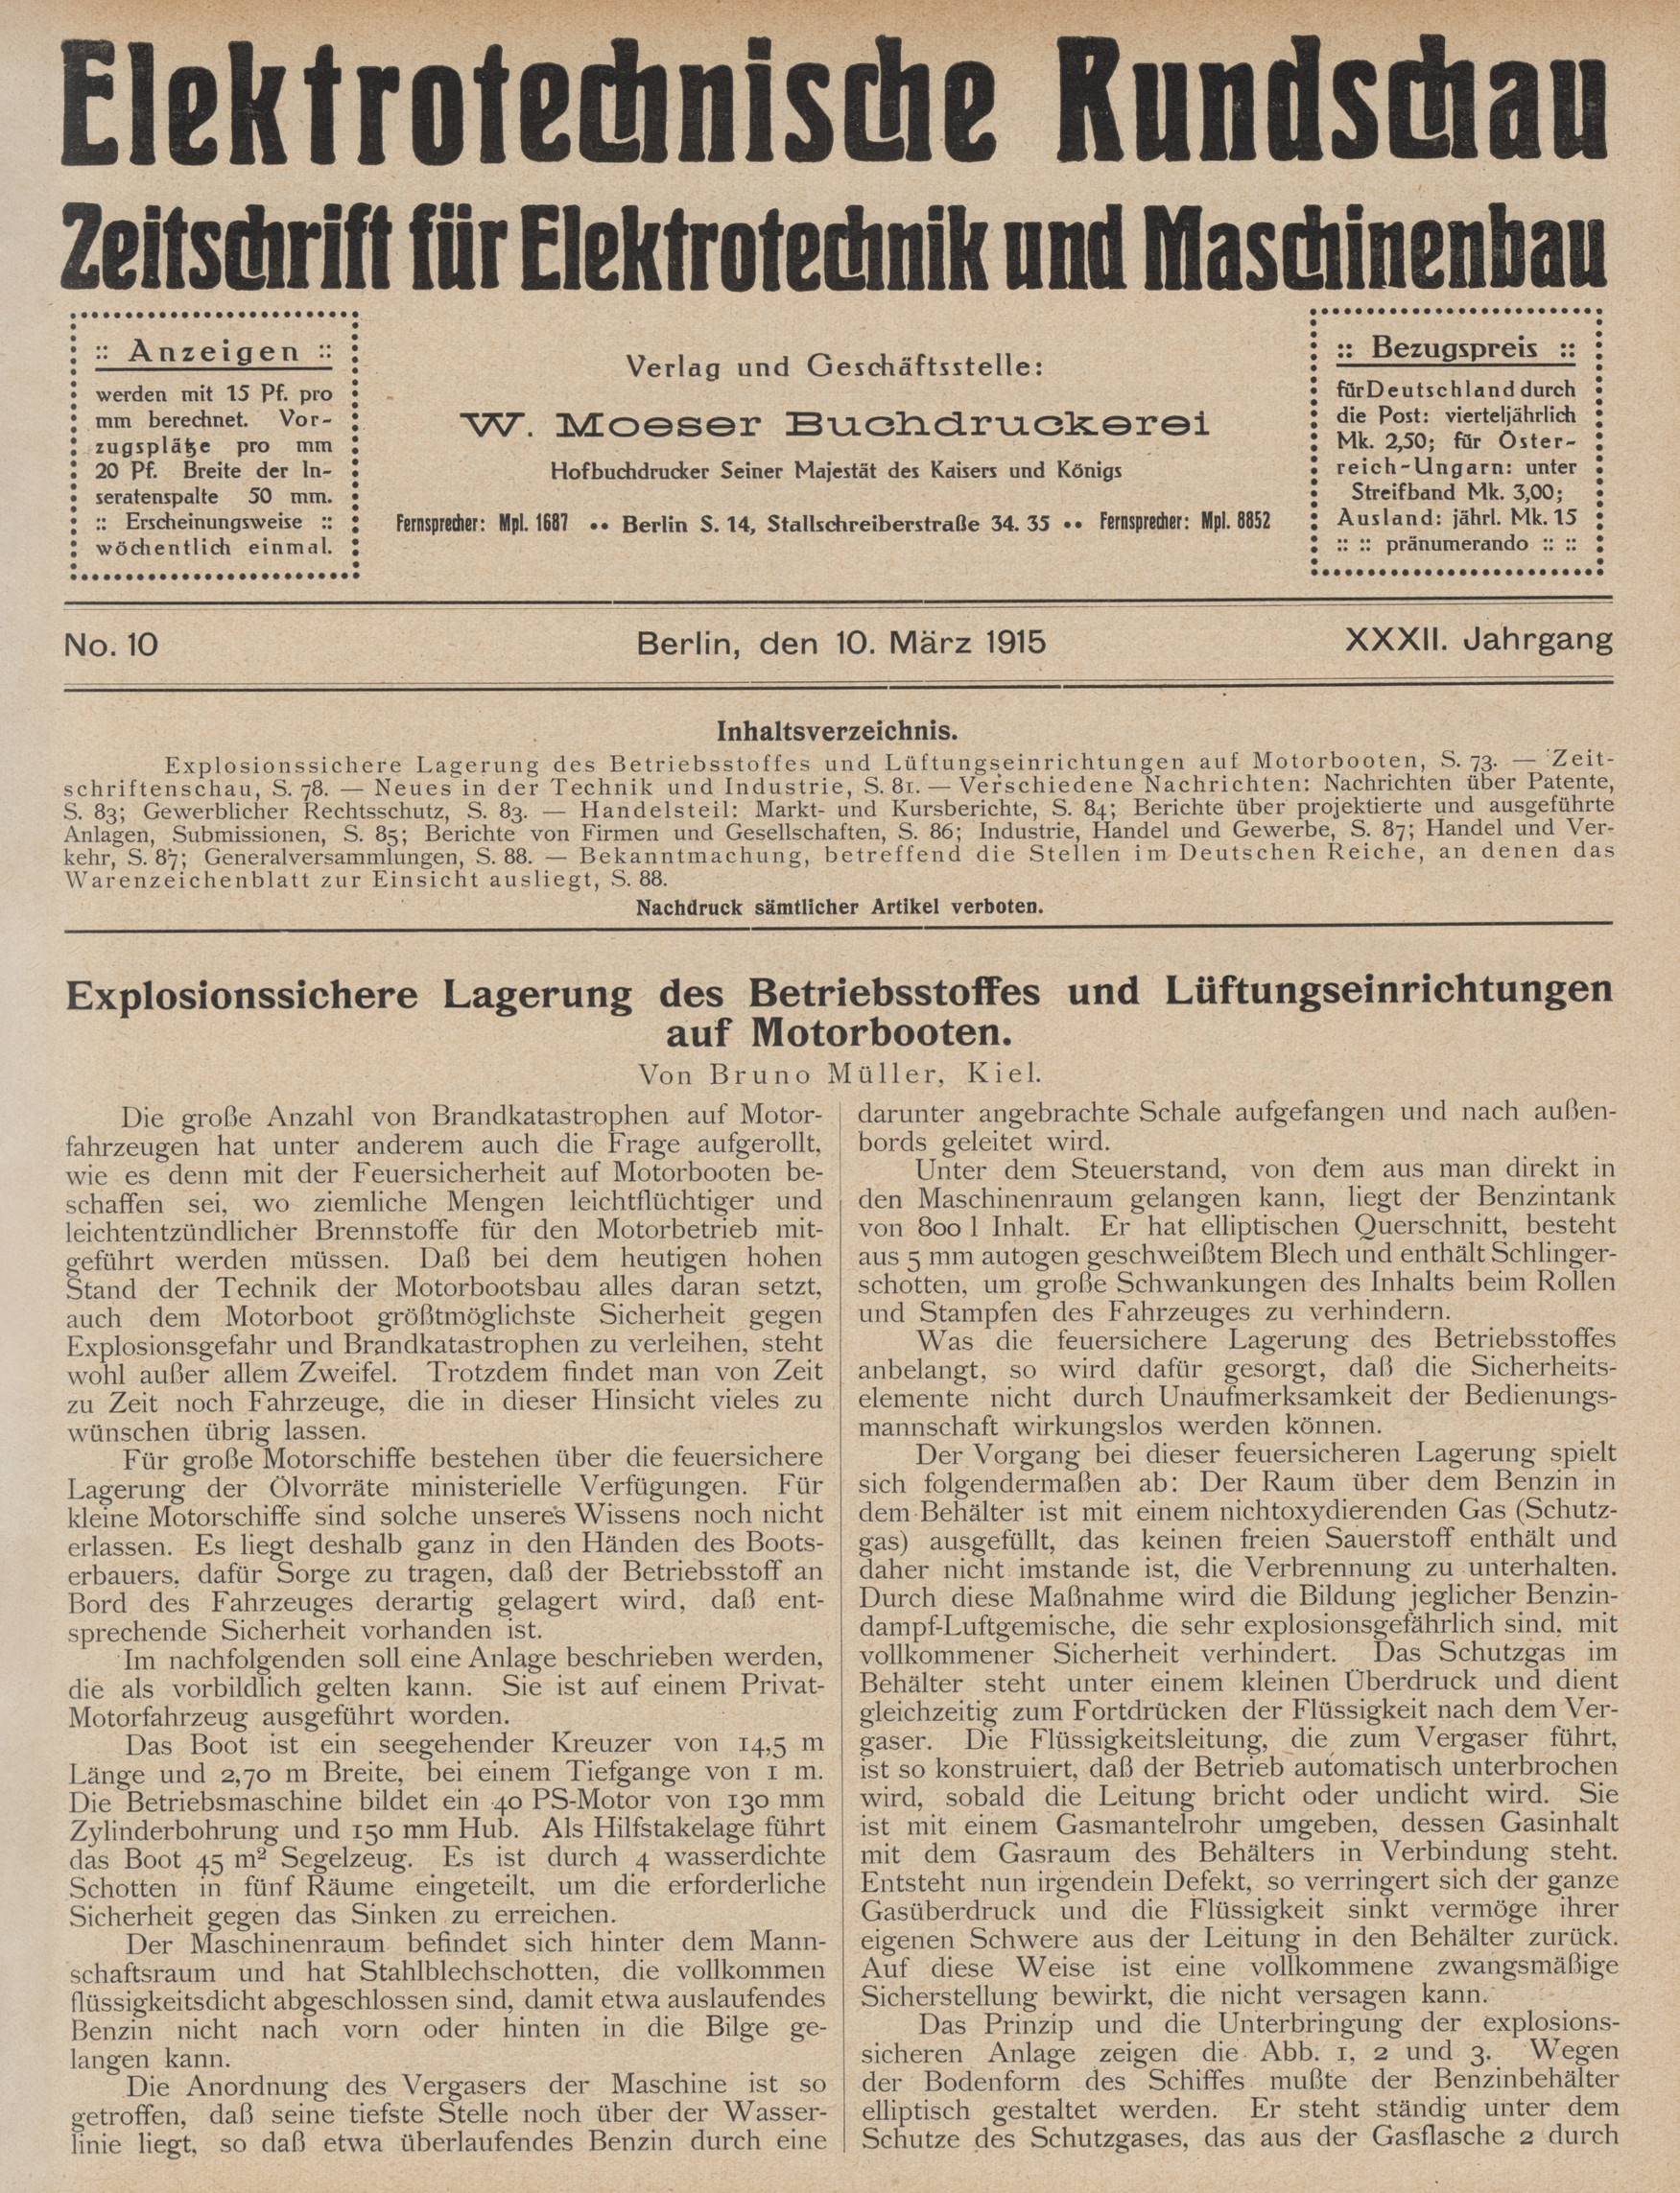 EElektrotechnische Rundschau : Zeitschrift für Elektrotechnik und Maschinenbau + Polytechnische Rundschau, No. 10, XXXII. Jahrgang